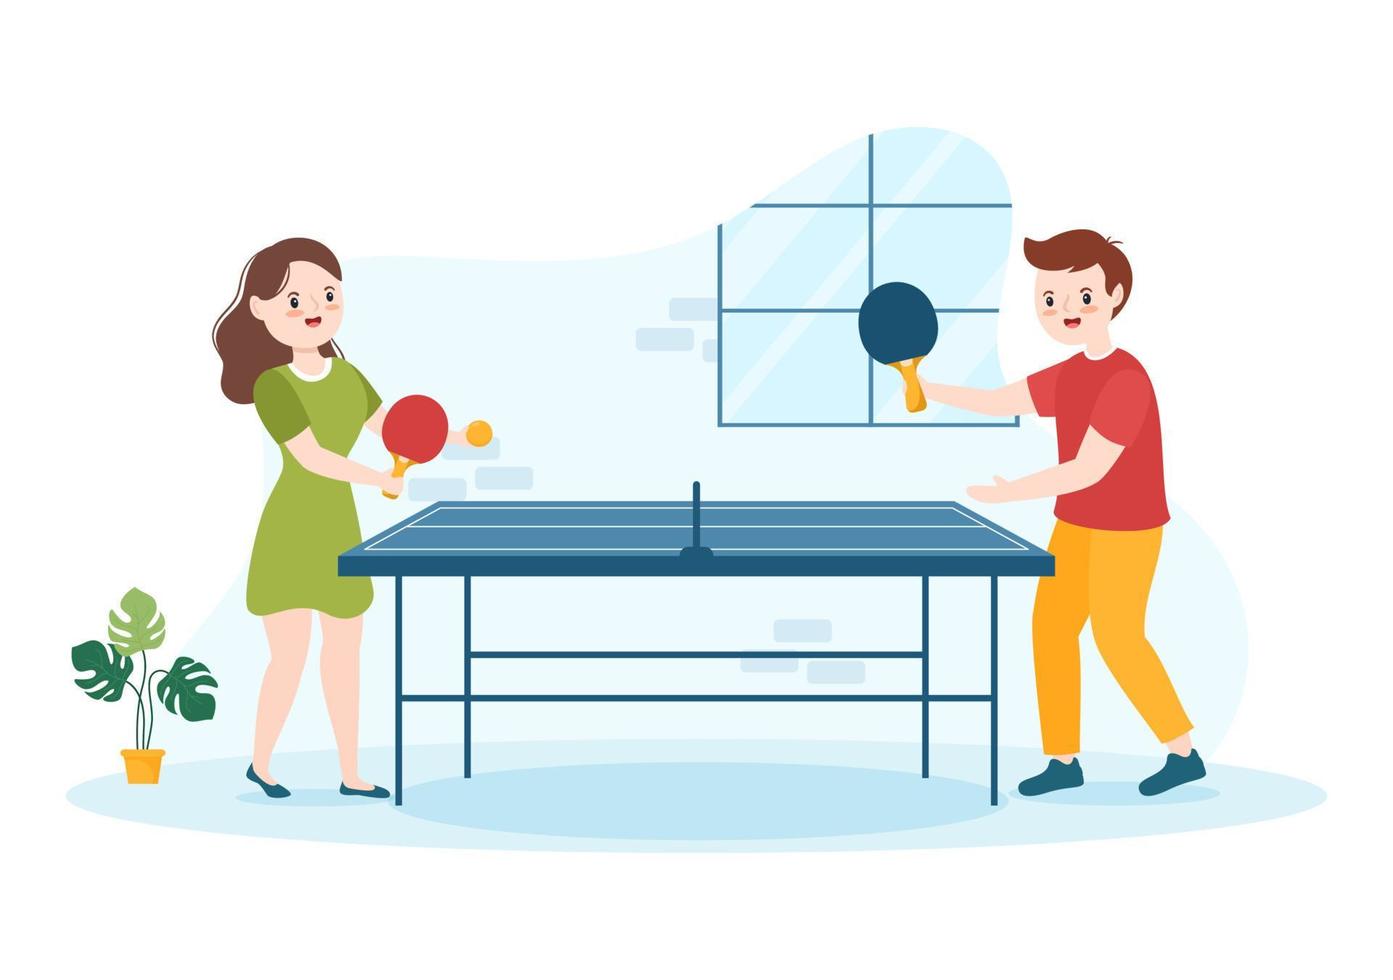 människor spelar tabell tennis sporter med racket och boll av ping pong spel match i platt tecknad serie hand dragen mallar illustration vektor